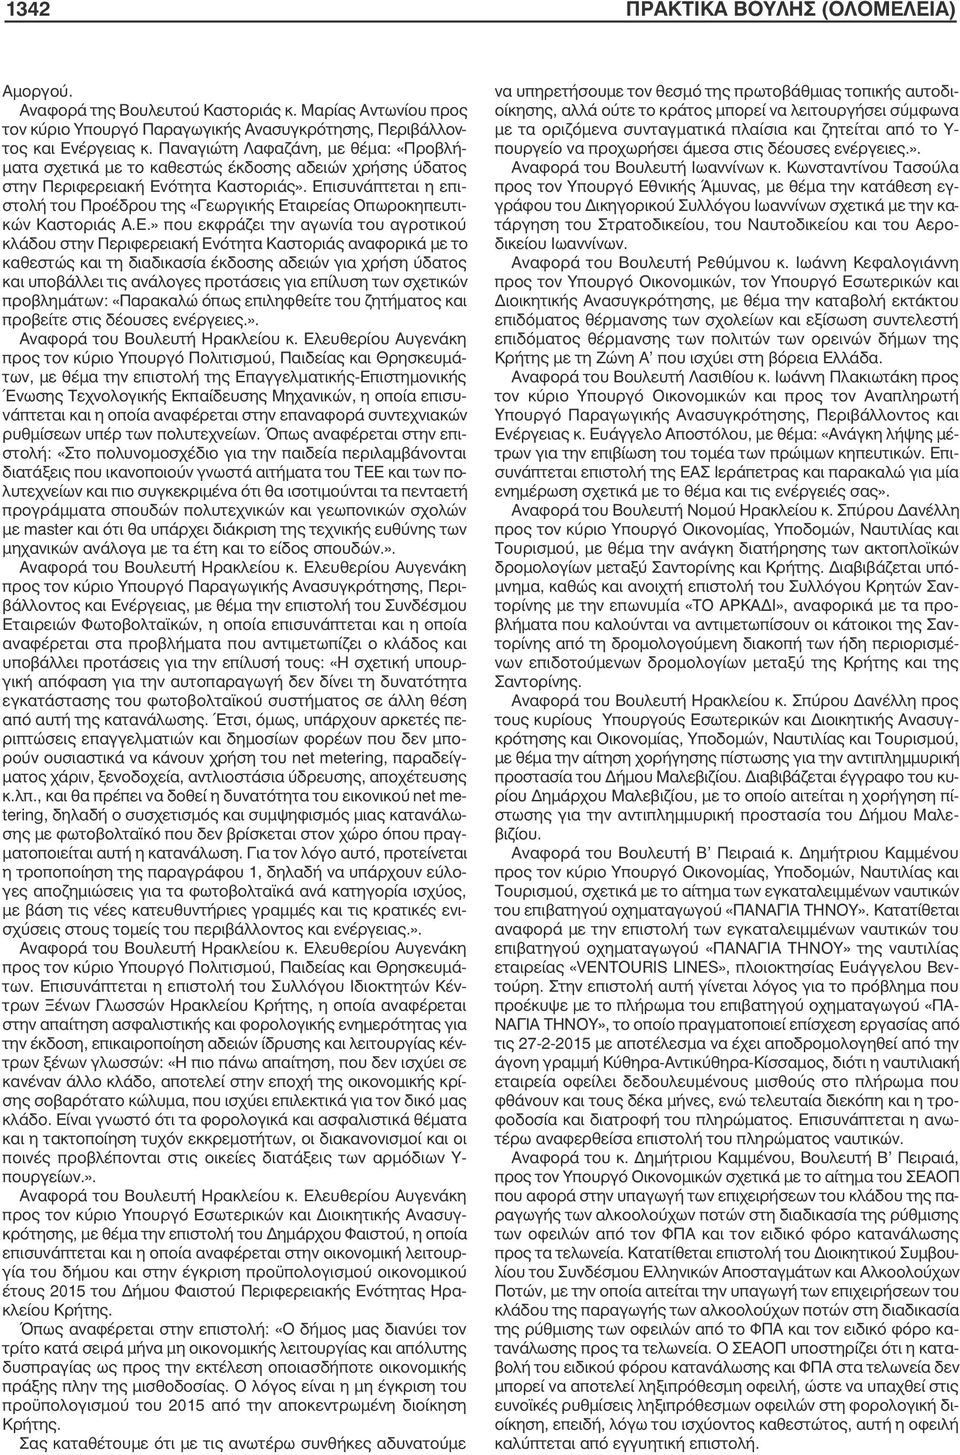 Επισυνάπτεται η επιστολή του Προέδρου της «Γεωργικής Εταιρείας Οπωροκηπευτικών Καστοριάς Α.Ε.» που εκφράζει την αγωνία του αγροτικού κλάδου στην Περιφερειακή Ενότητα Καστοριάς αναφορικά µε το